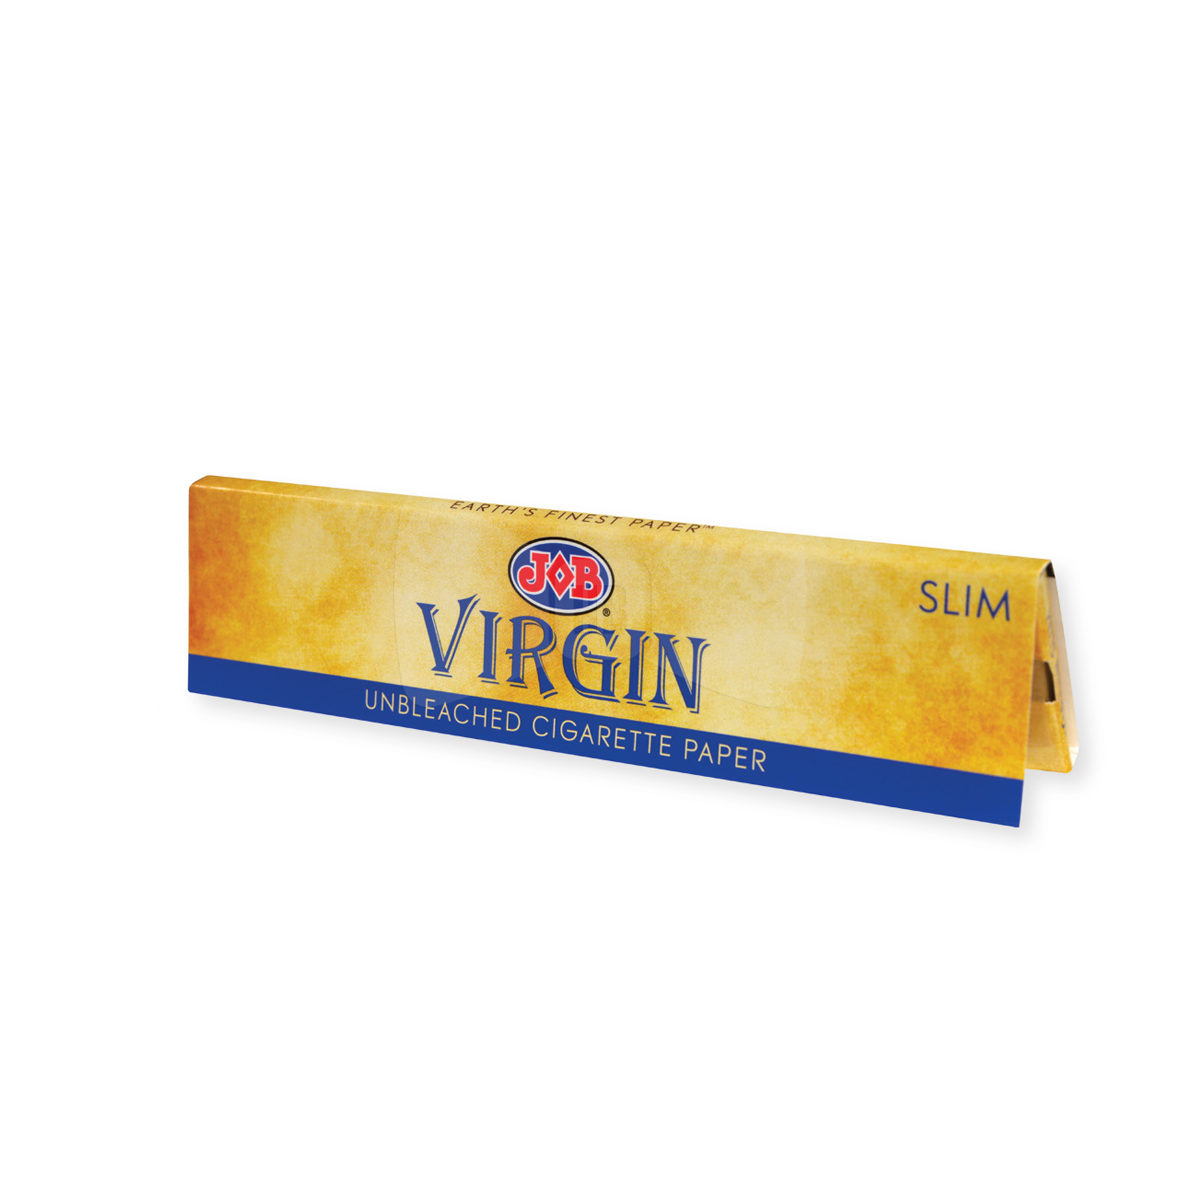 JOB Virgin Unbleached Rolling Papers Slim 1 Pack